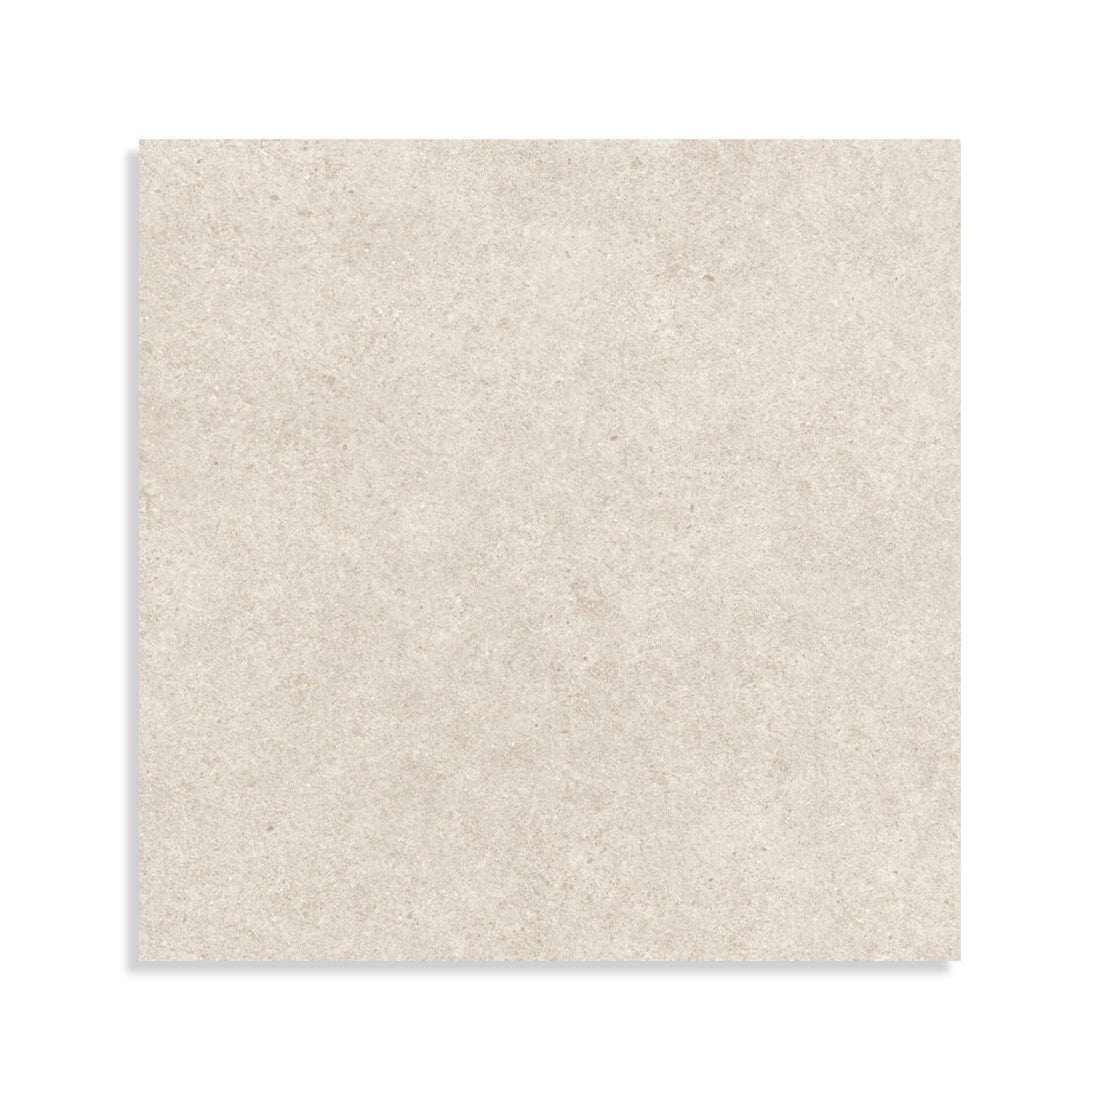 Minoli - Boost Stone White Matt, 120 x 120cm (BST1270) - Tiles &amp; Stone To You